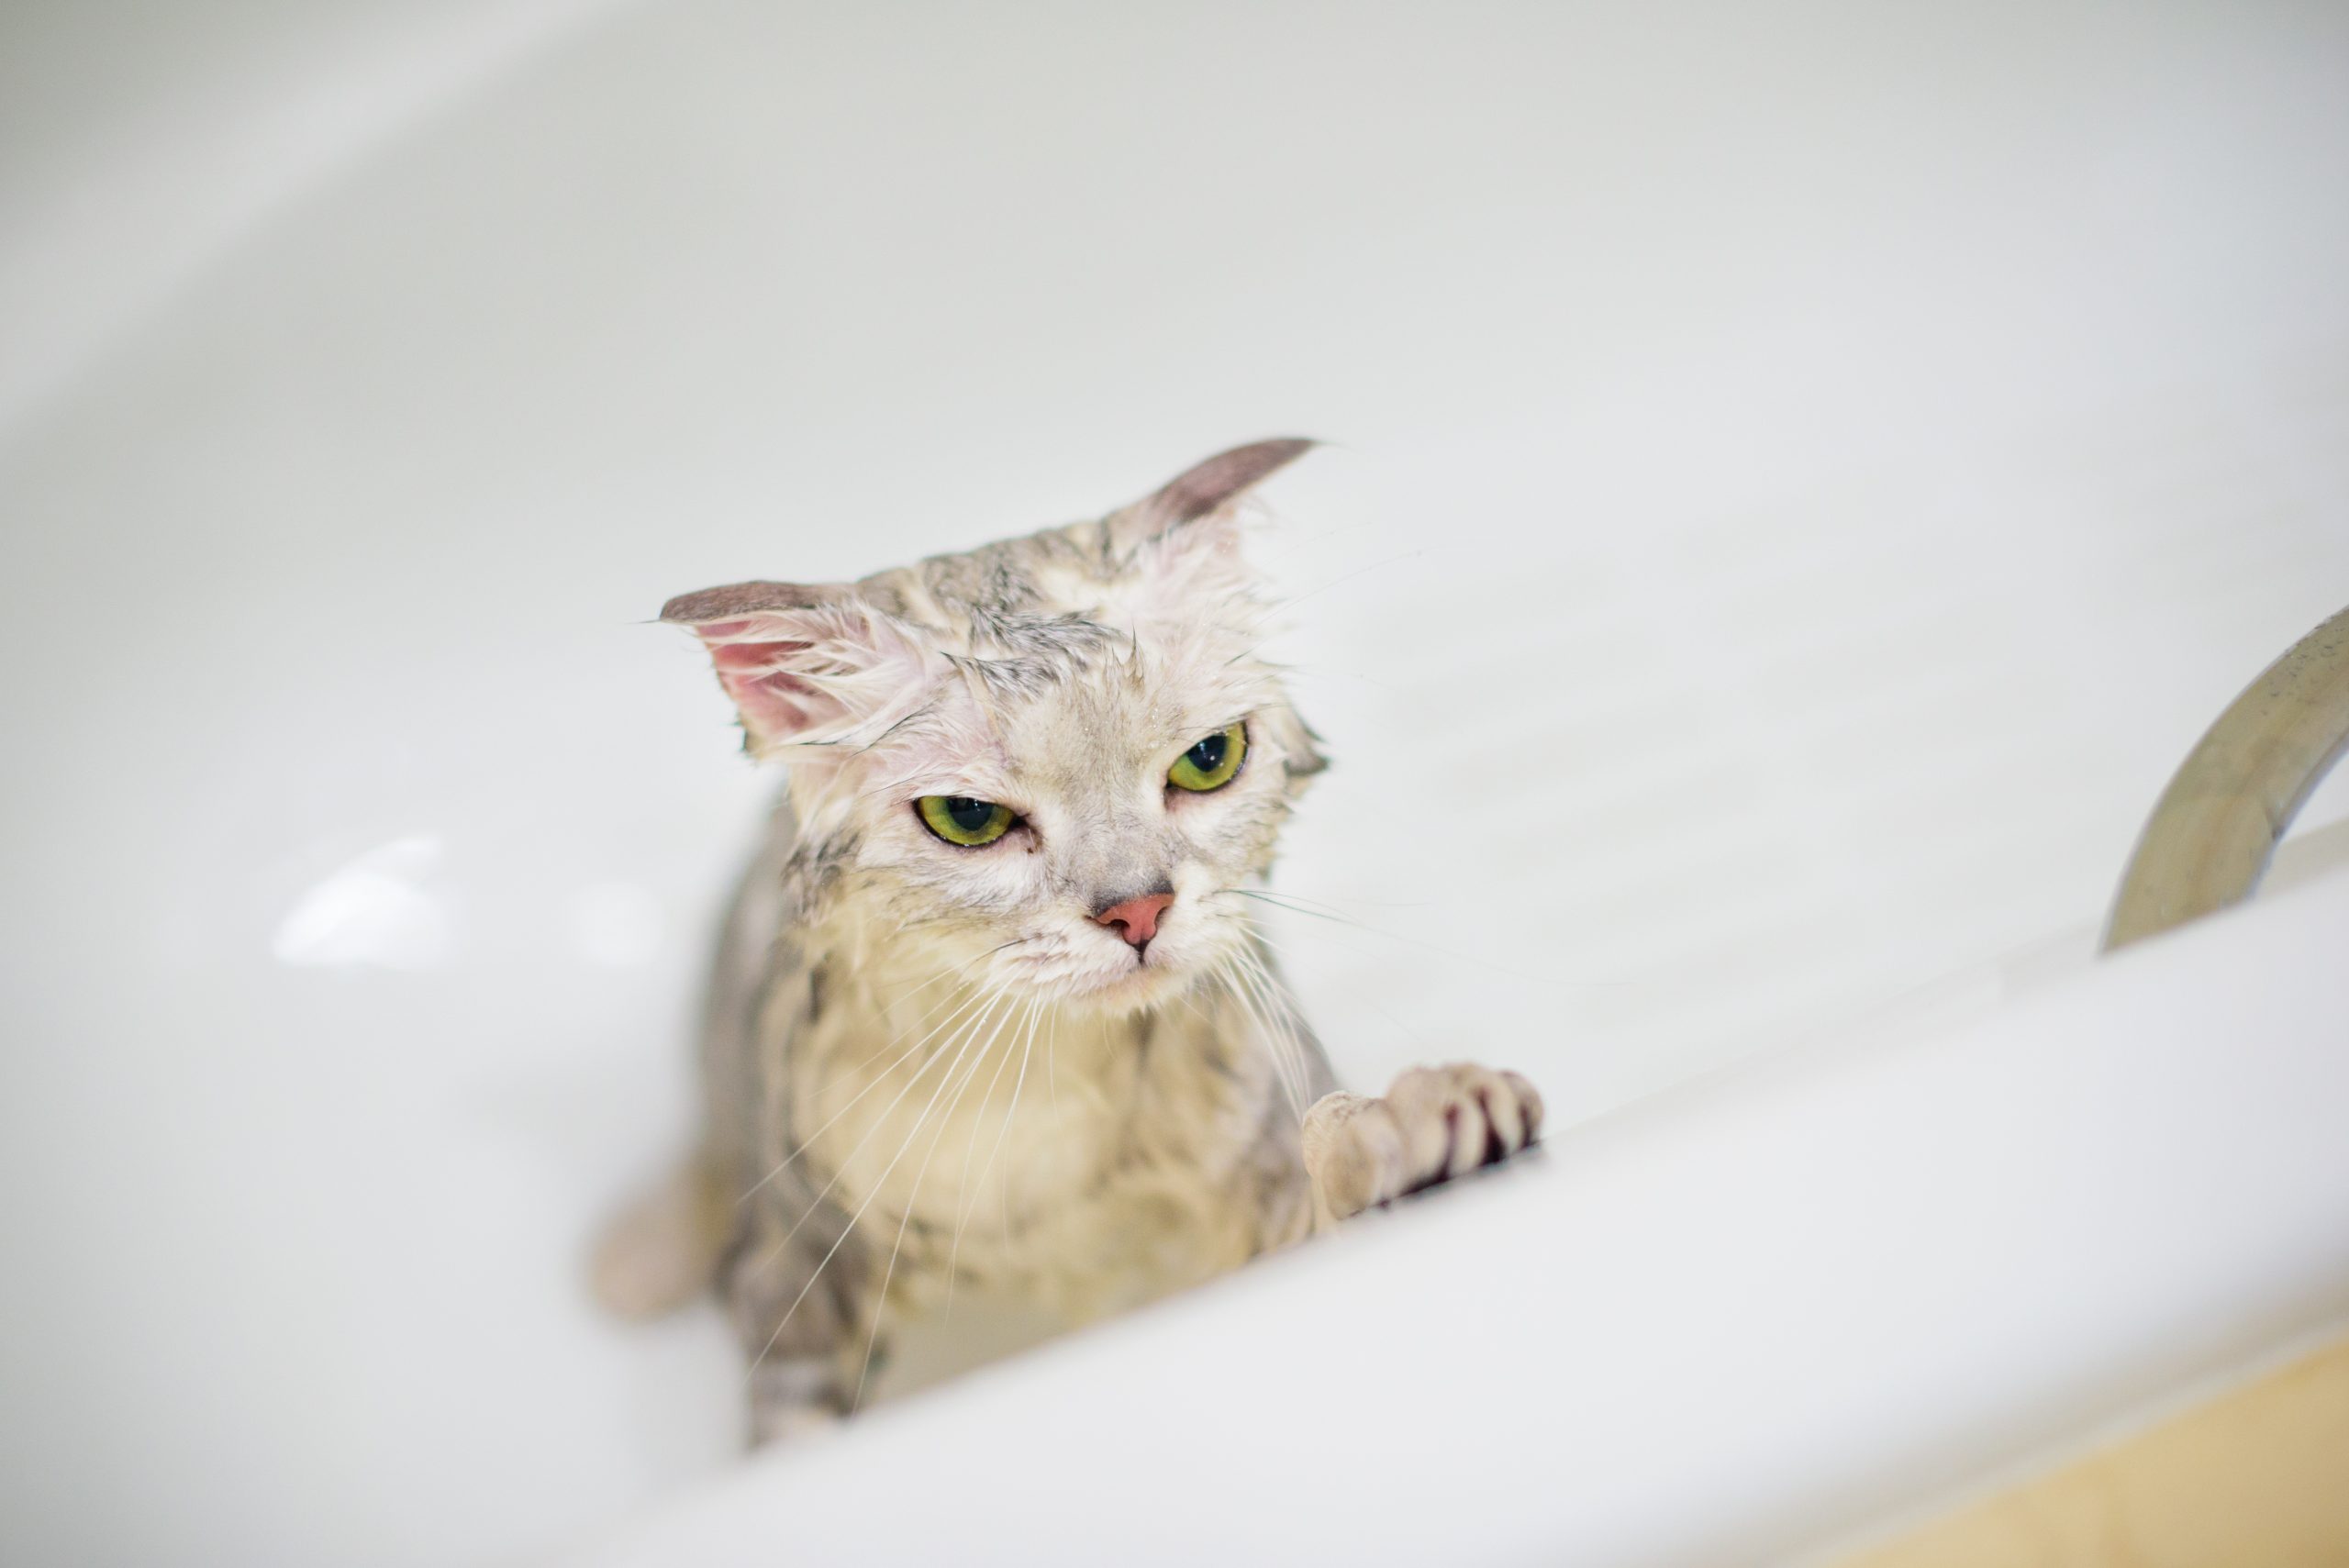 A cat in bathtub